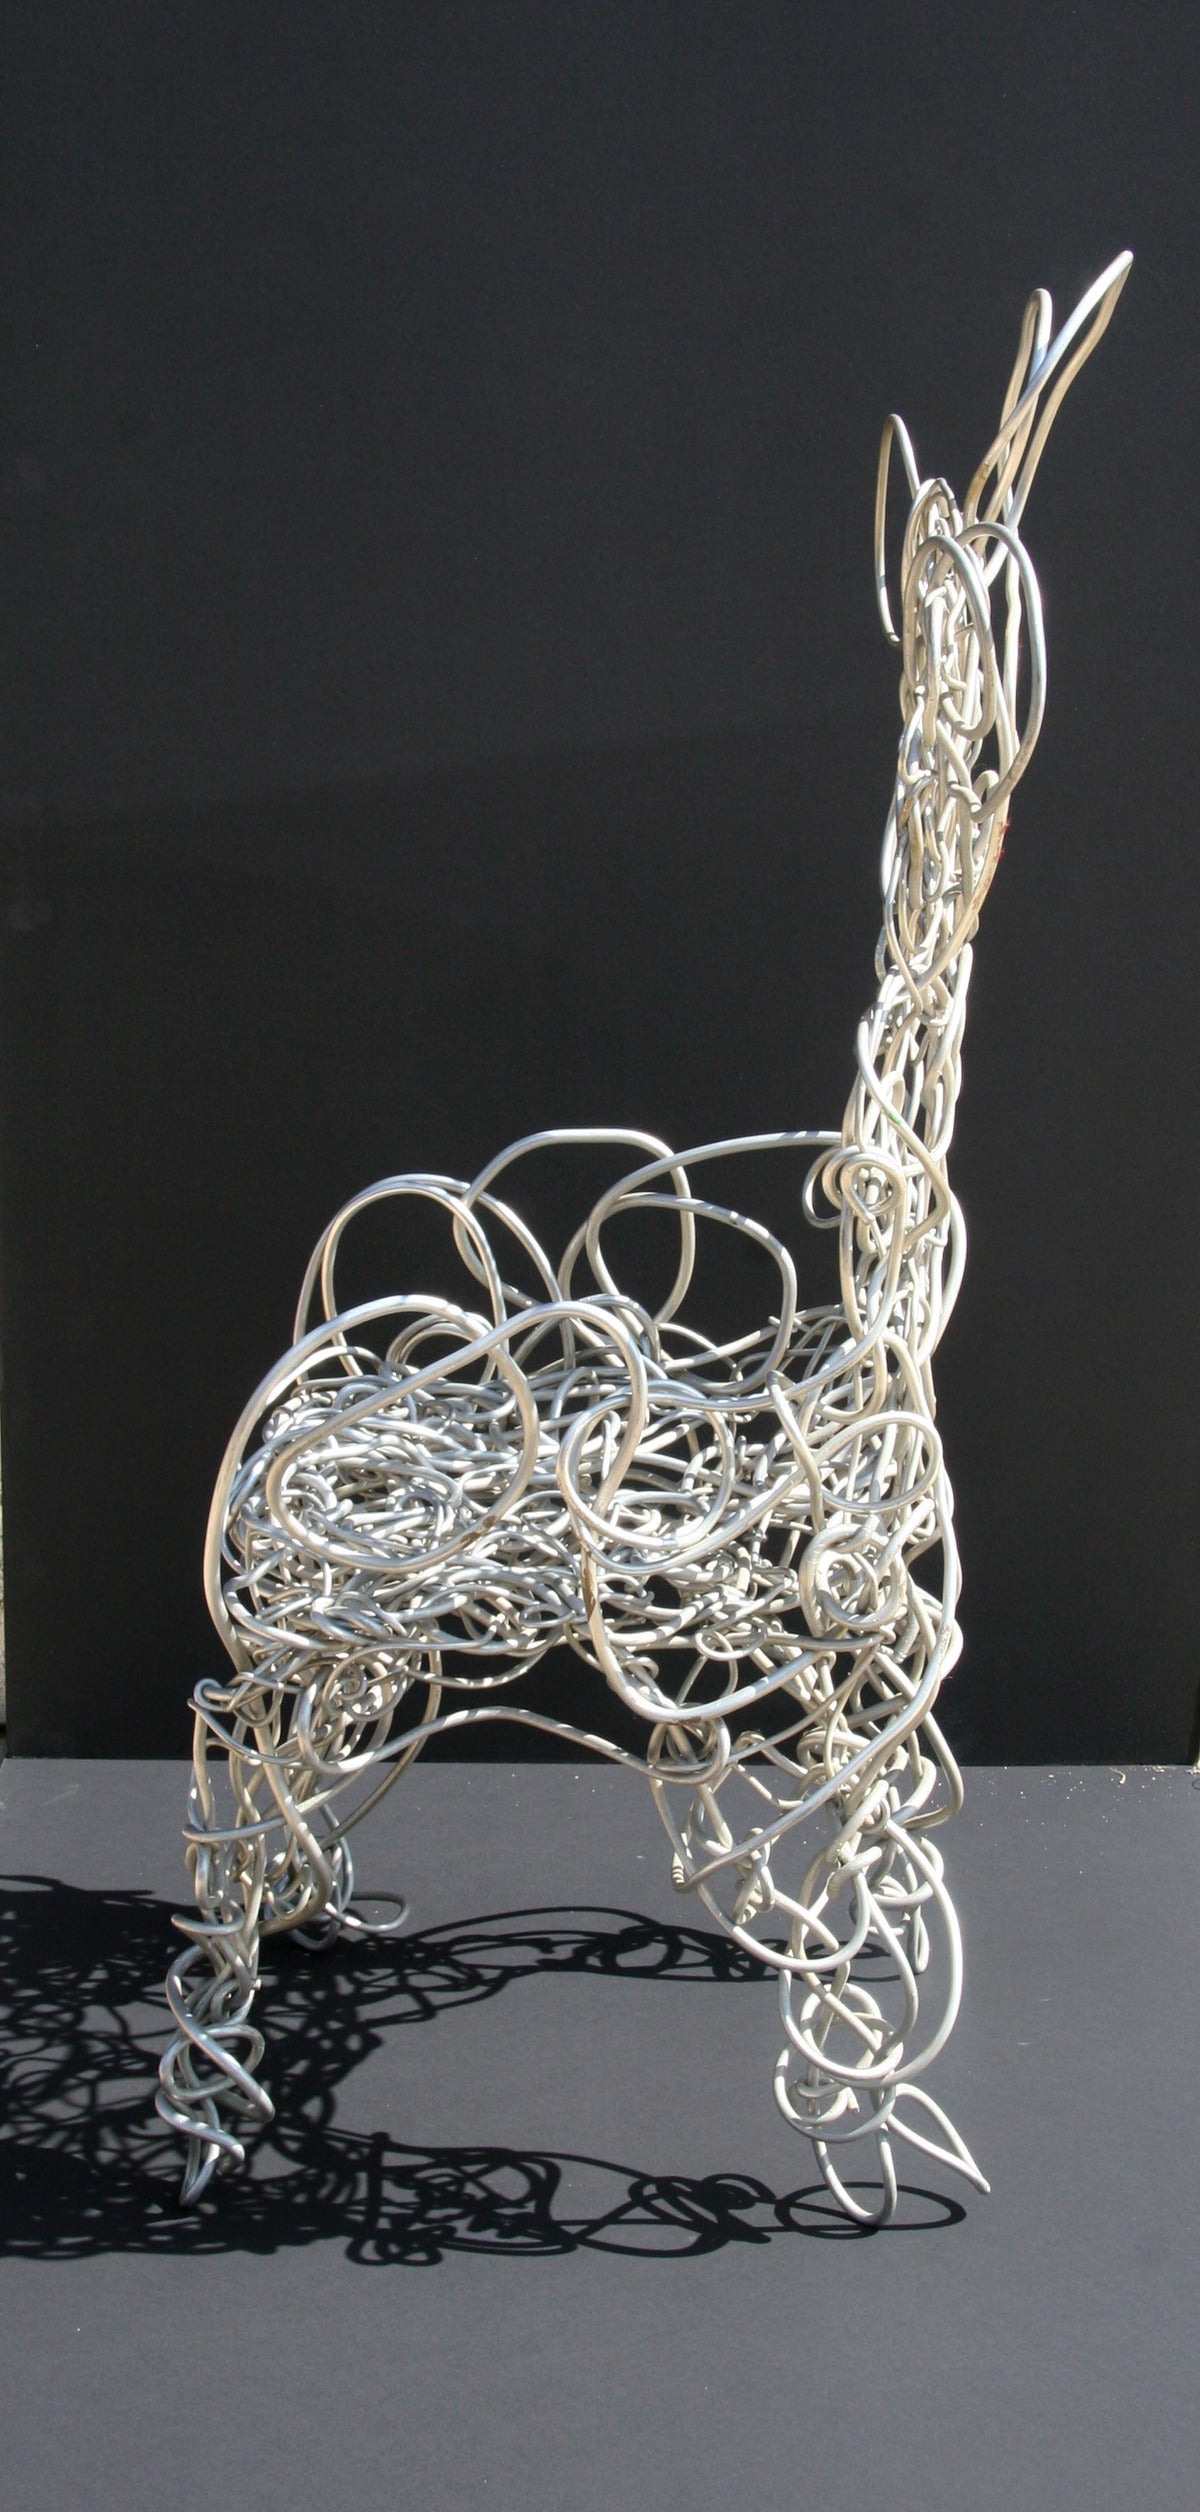 Unique Aluminum Sculptural Chair - Contemporary Sculpture by Forrest Warden Myers